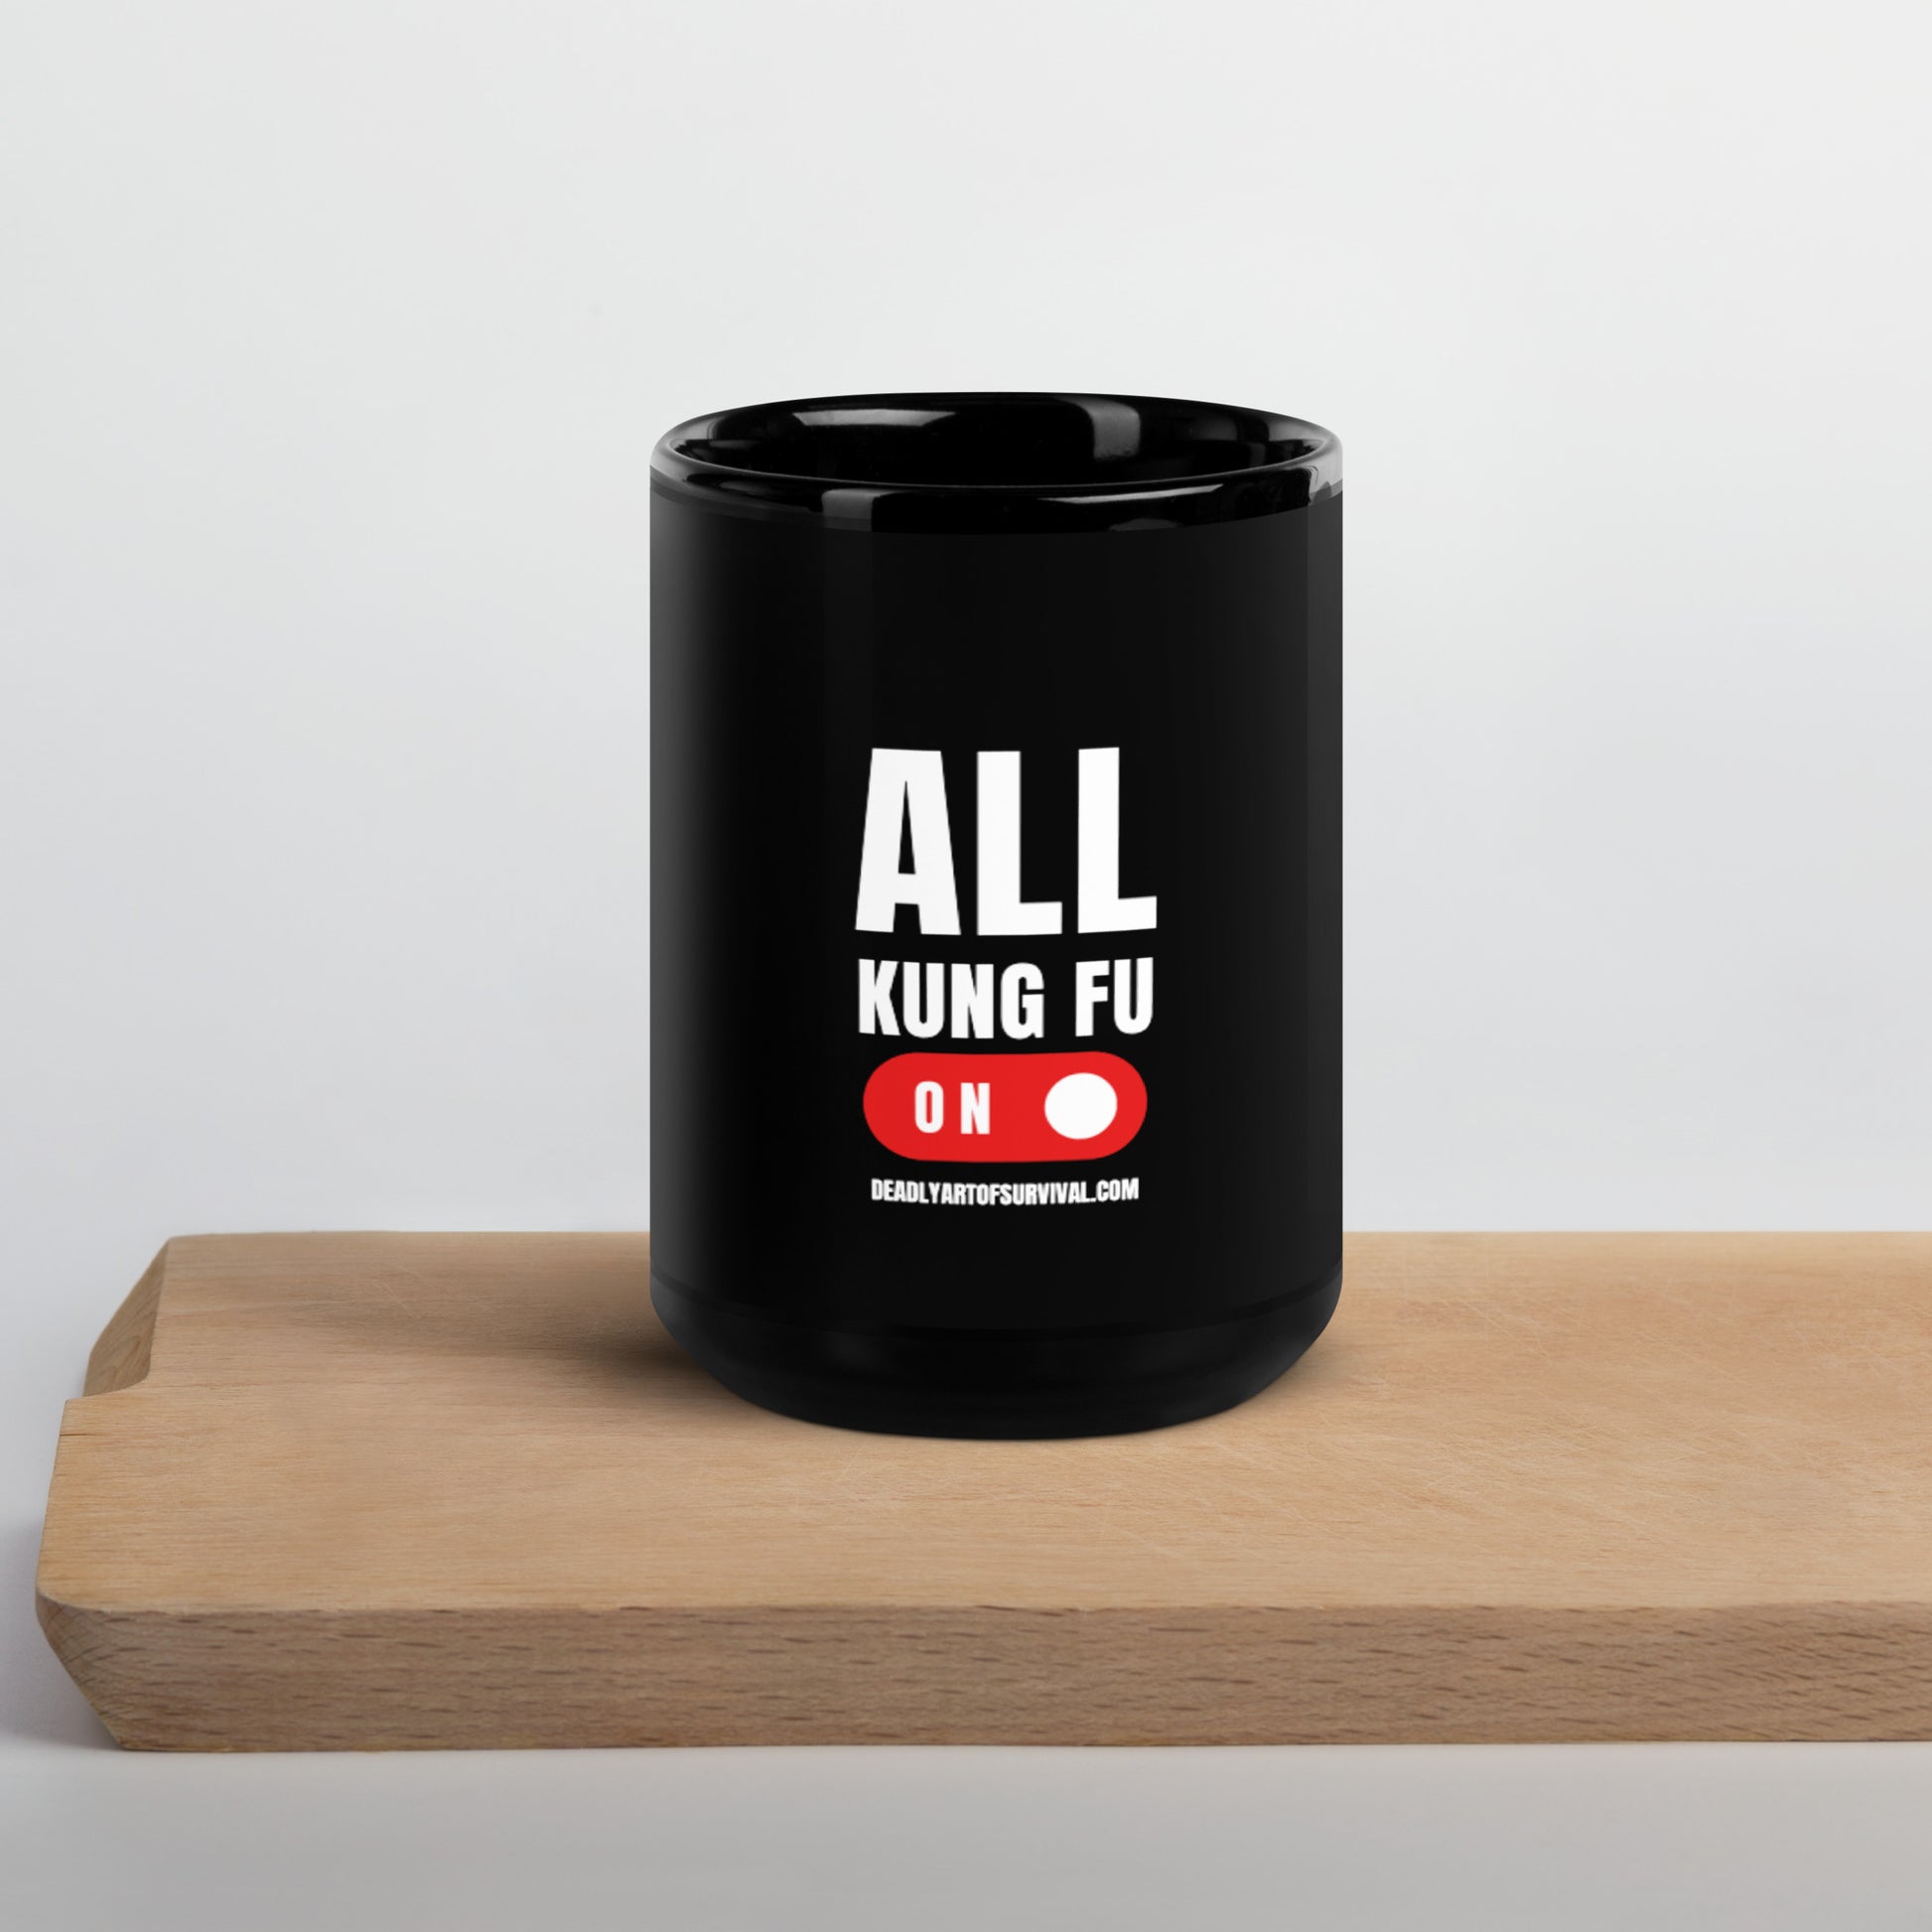 All Kung Fu Black Glossy Mug deadlyartofsurvival.com